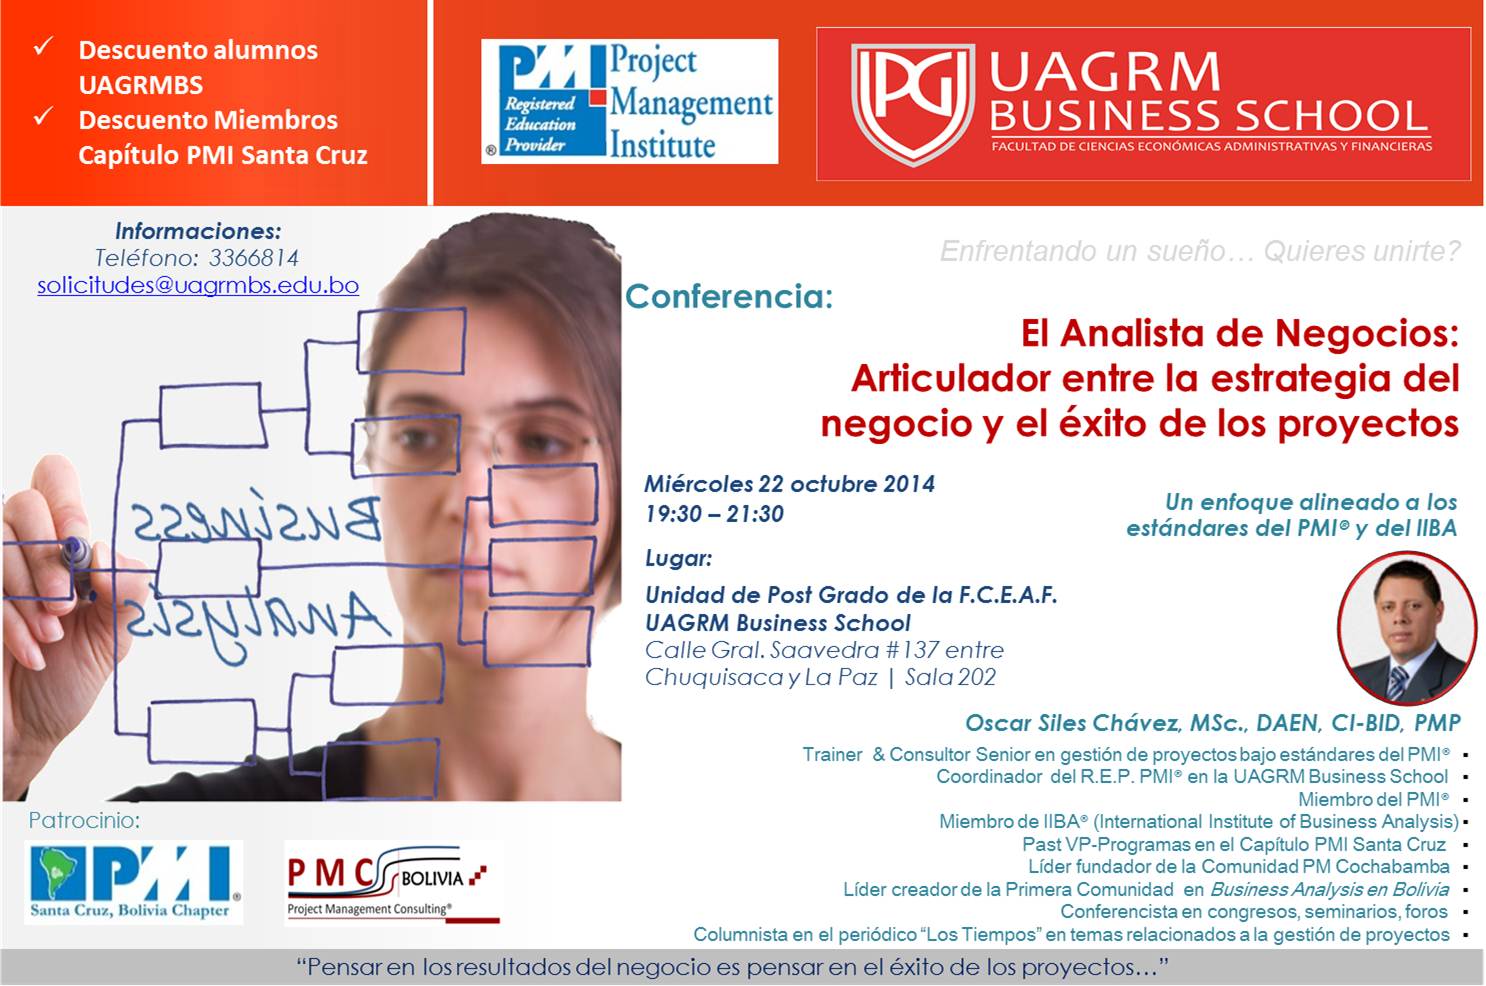 Arte publicidad conferencia BA UAGRMS - oct 2014 - completo 01 - v02